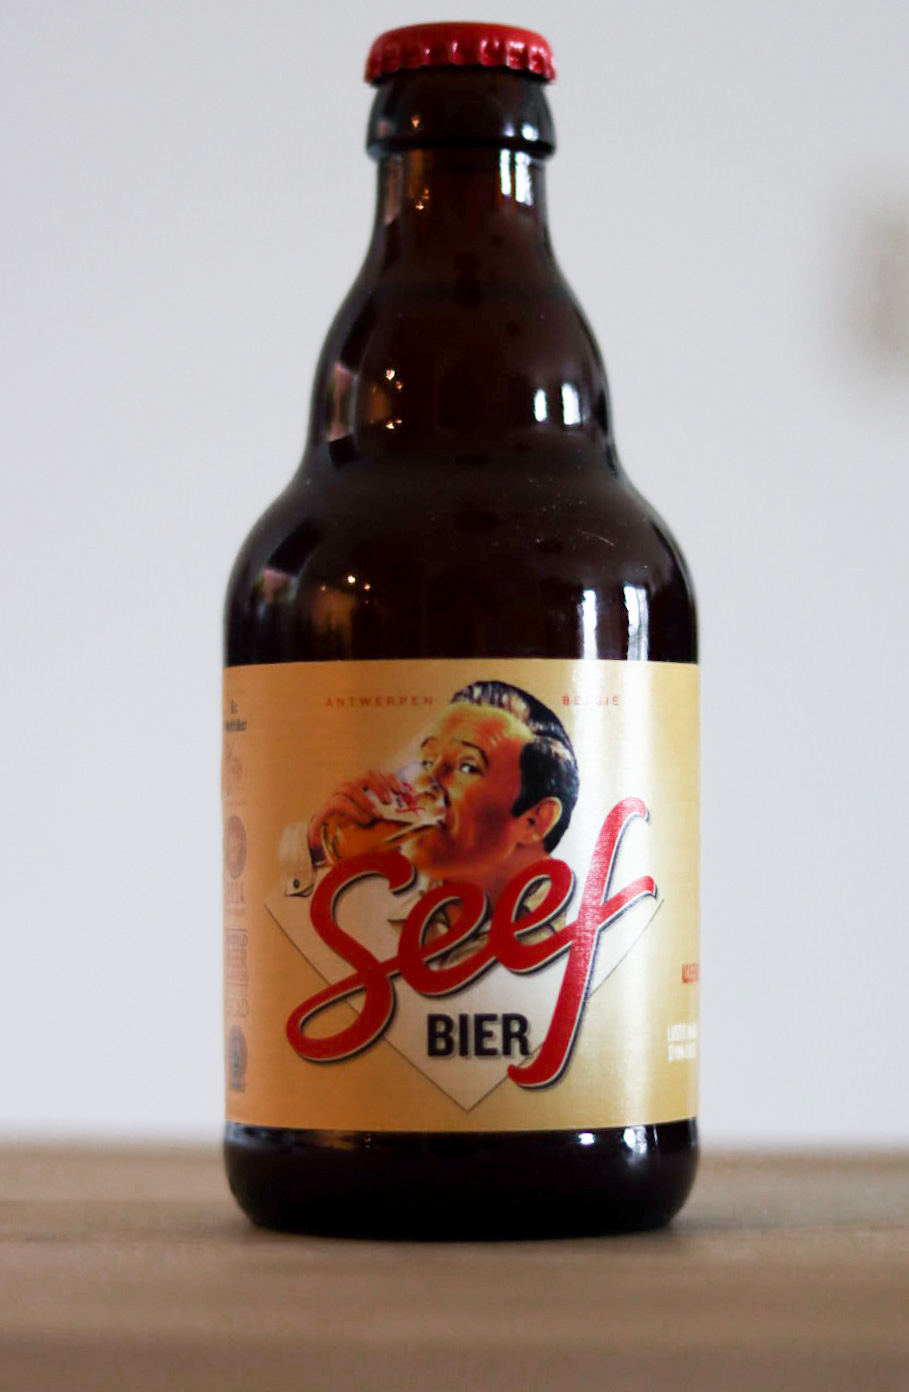 Seef Bier